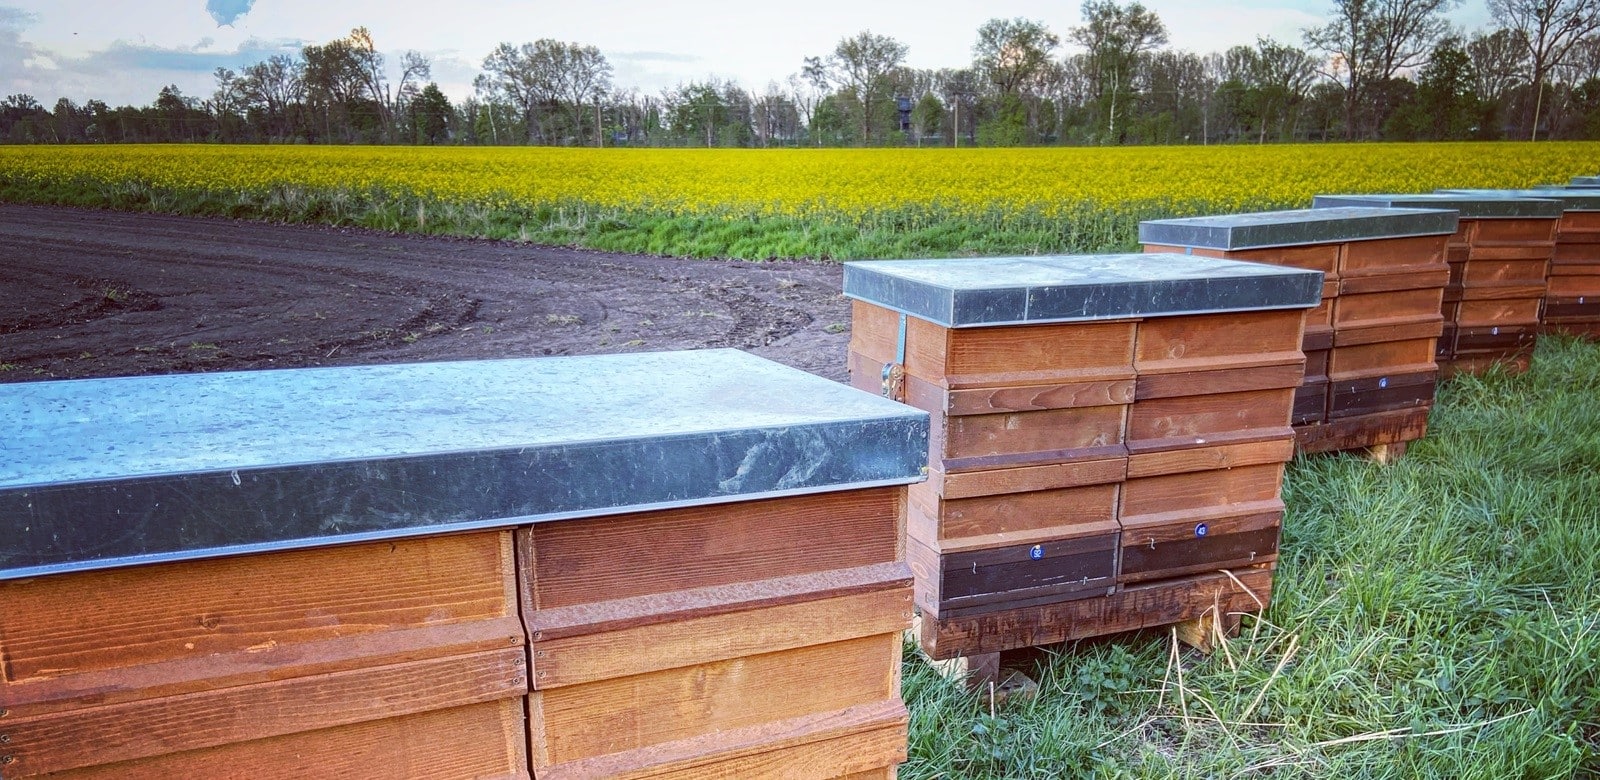 Bienenvölker in ihren Beuten am Rande eines Rapsfeldes